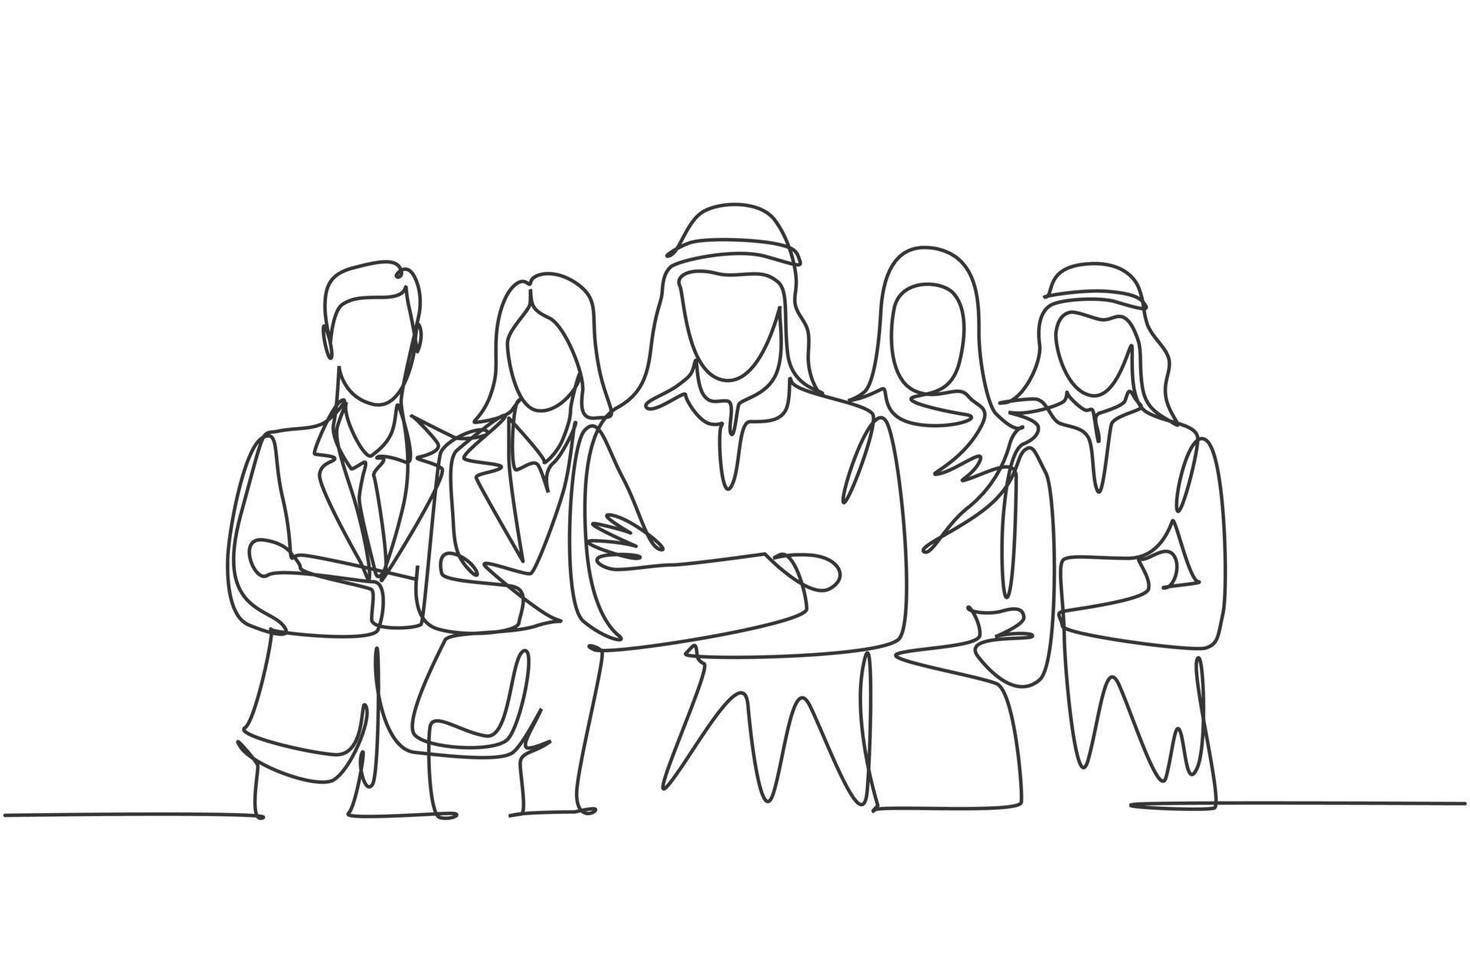 één enkele lijntekening van jonge gelukkige mannelijke en vrouwelijke moslimarbeiders staan samen in de rij. saoedi-arabische doek shmag, kandora, hoofddoek, thobe, hijab. doorlopende lijn tekenen ontwerp vectorillustratie vector